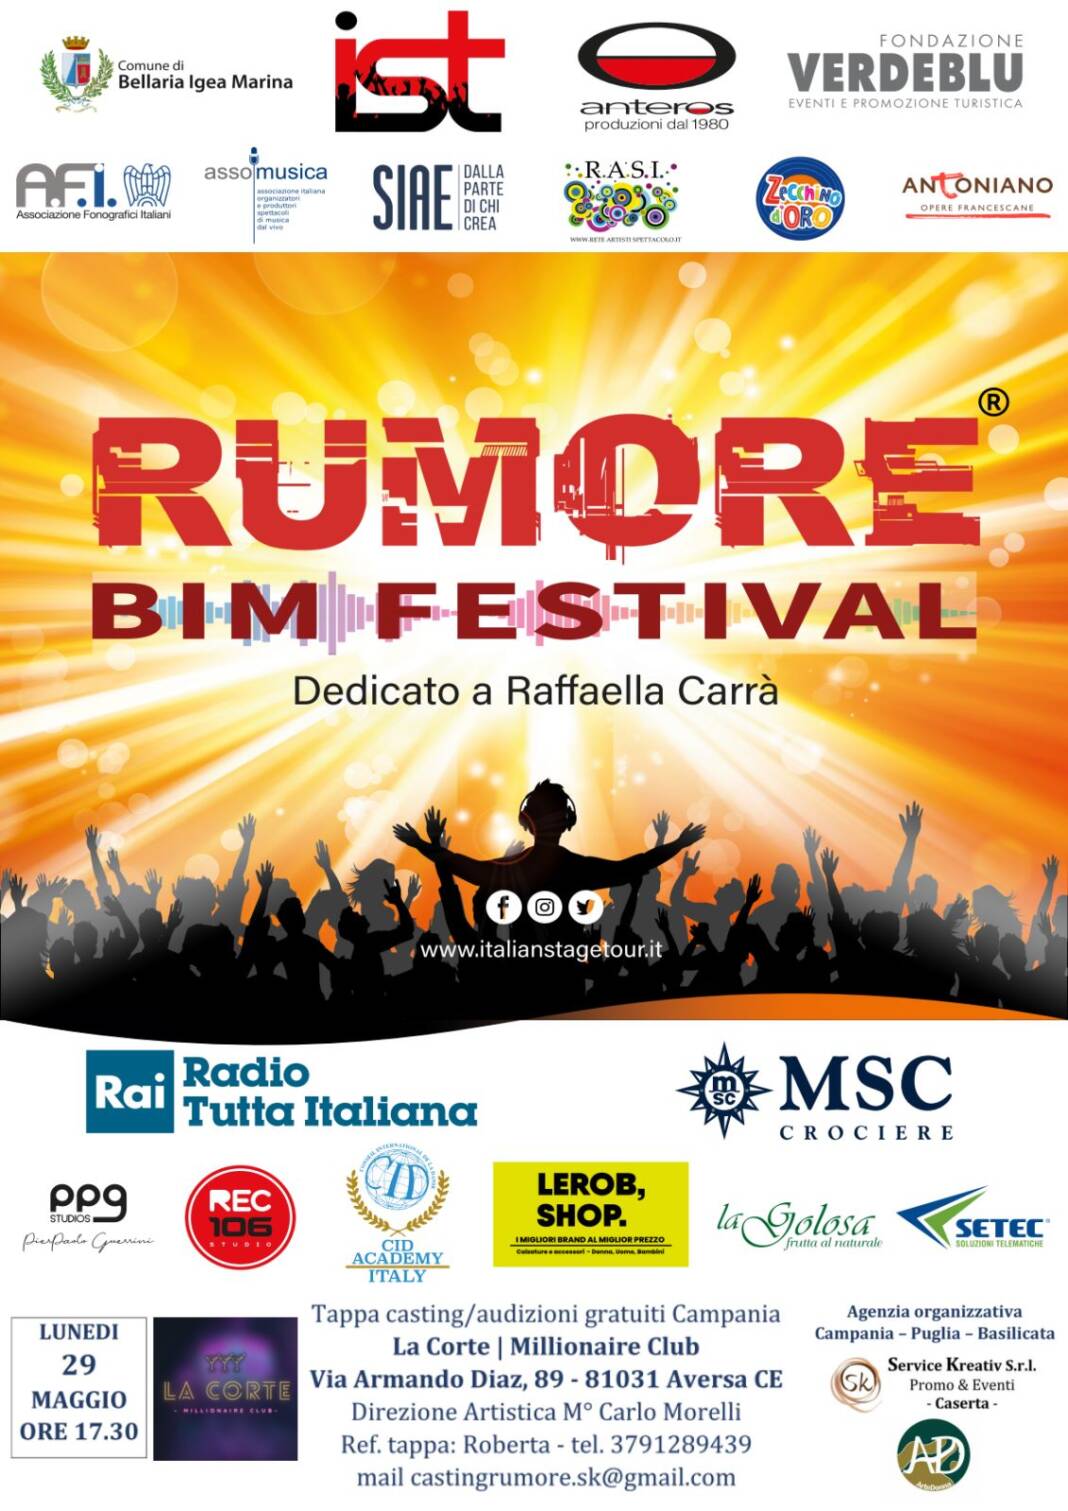 Rumore Bim Festival